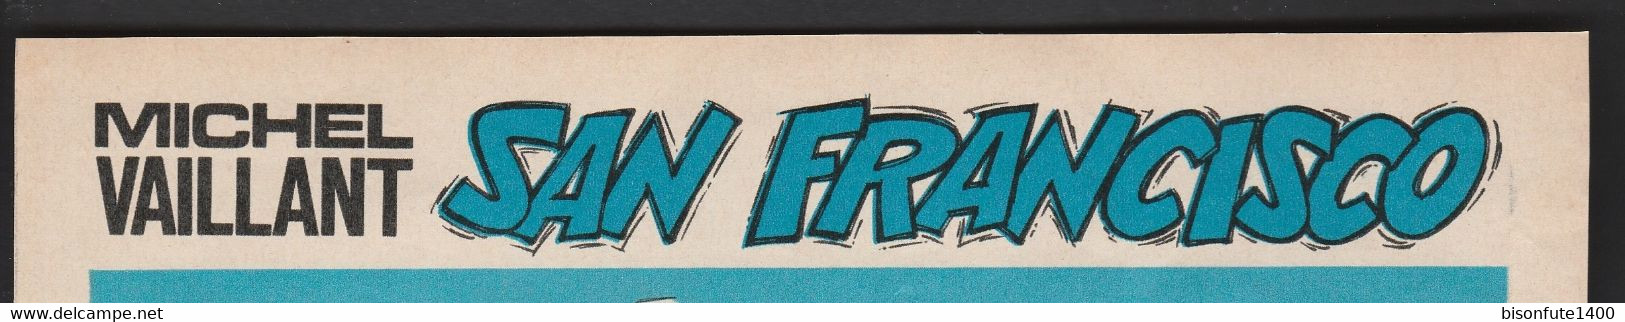 Bandeau titre de Michel Vaillant "San Francisco Circus" datant de 1976 et inédit dans les bandes dessinées en albums.